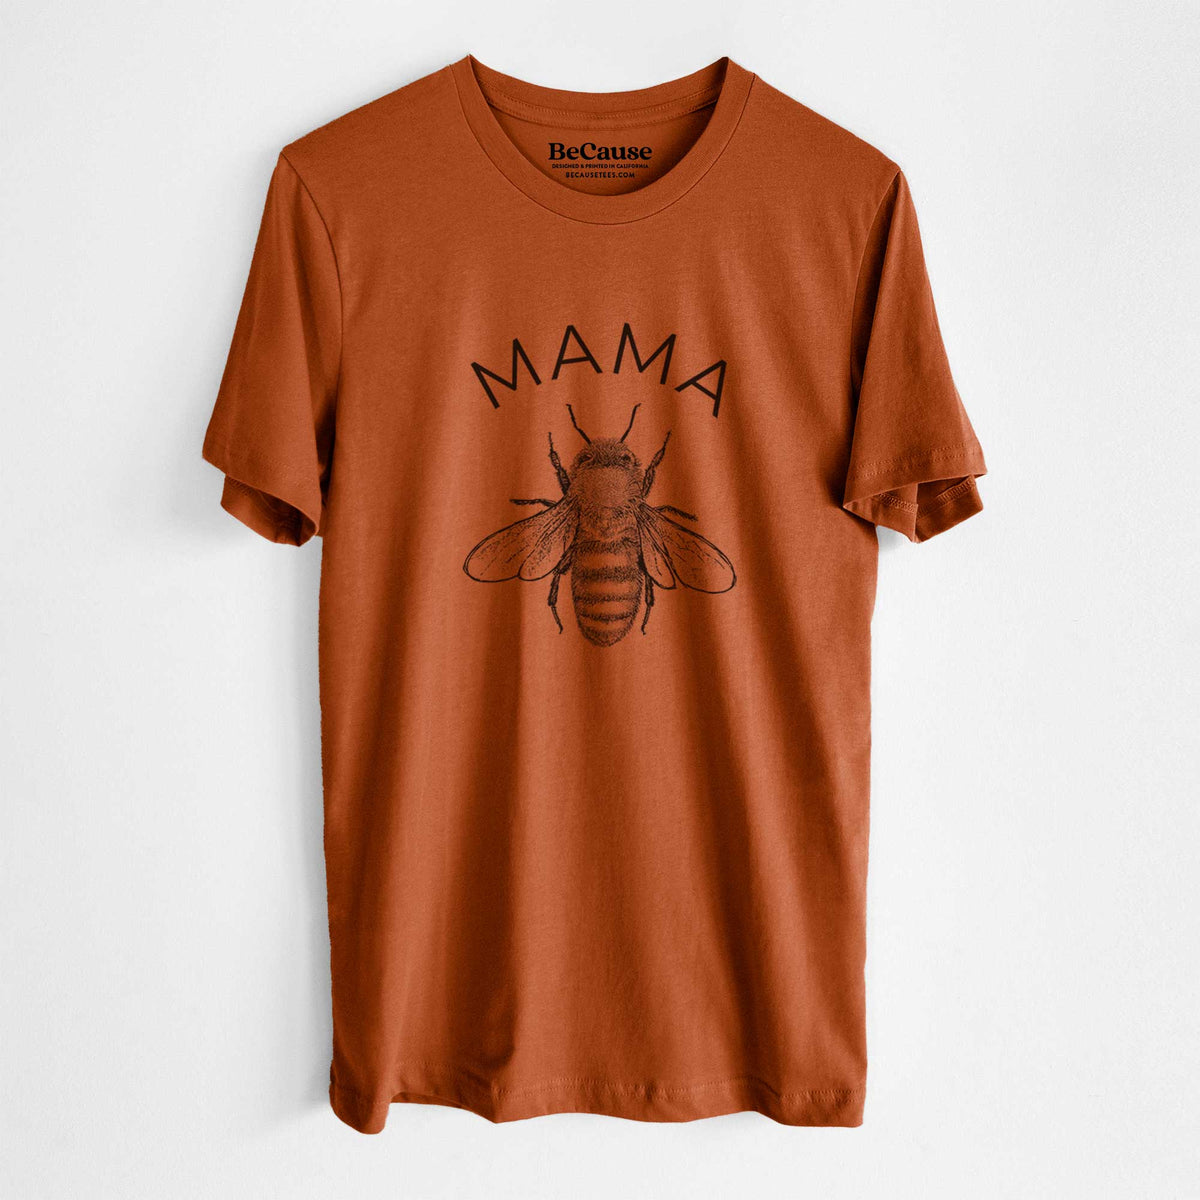 Mama Bee - Lightweight 100% Cotton Unisex Crewneck